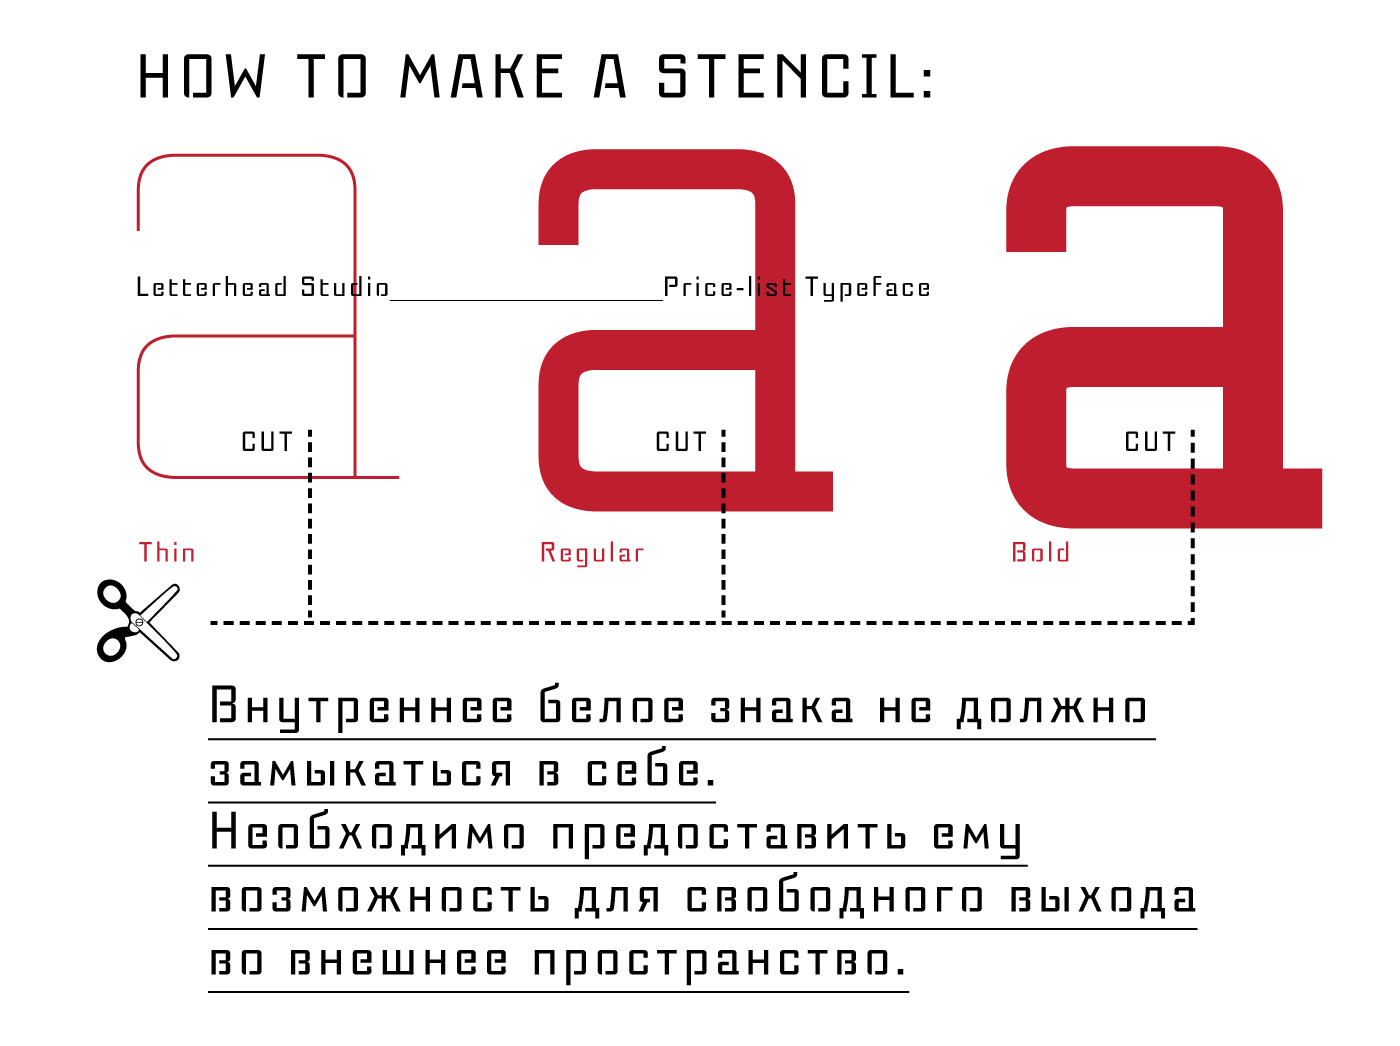 Example font Pricelist #5